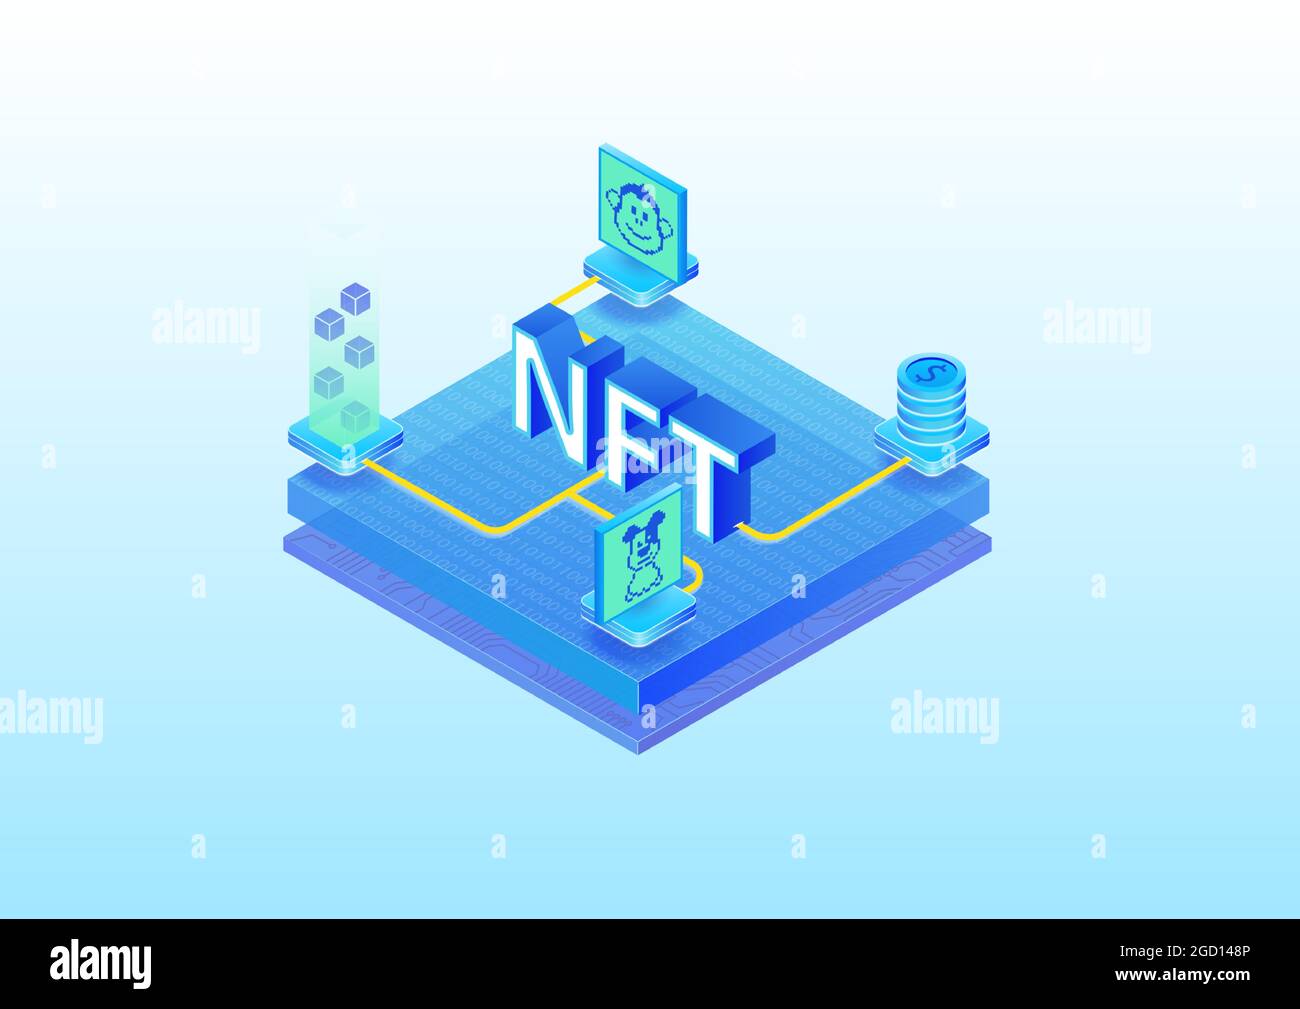 Infografica sul concetto di token non fungibile NFT. illustrazione vettoriale isometrica 3d di opere d'arte digitali acquistate tramite blockchain. Illustrazione Vettoriale